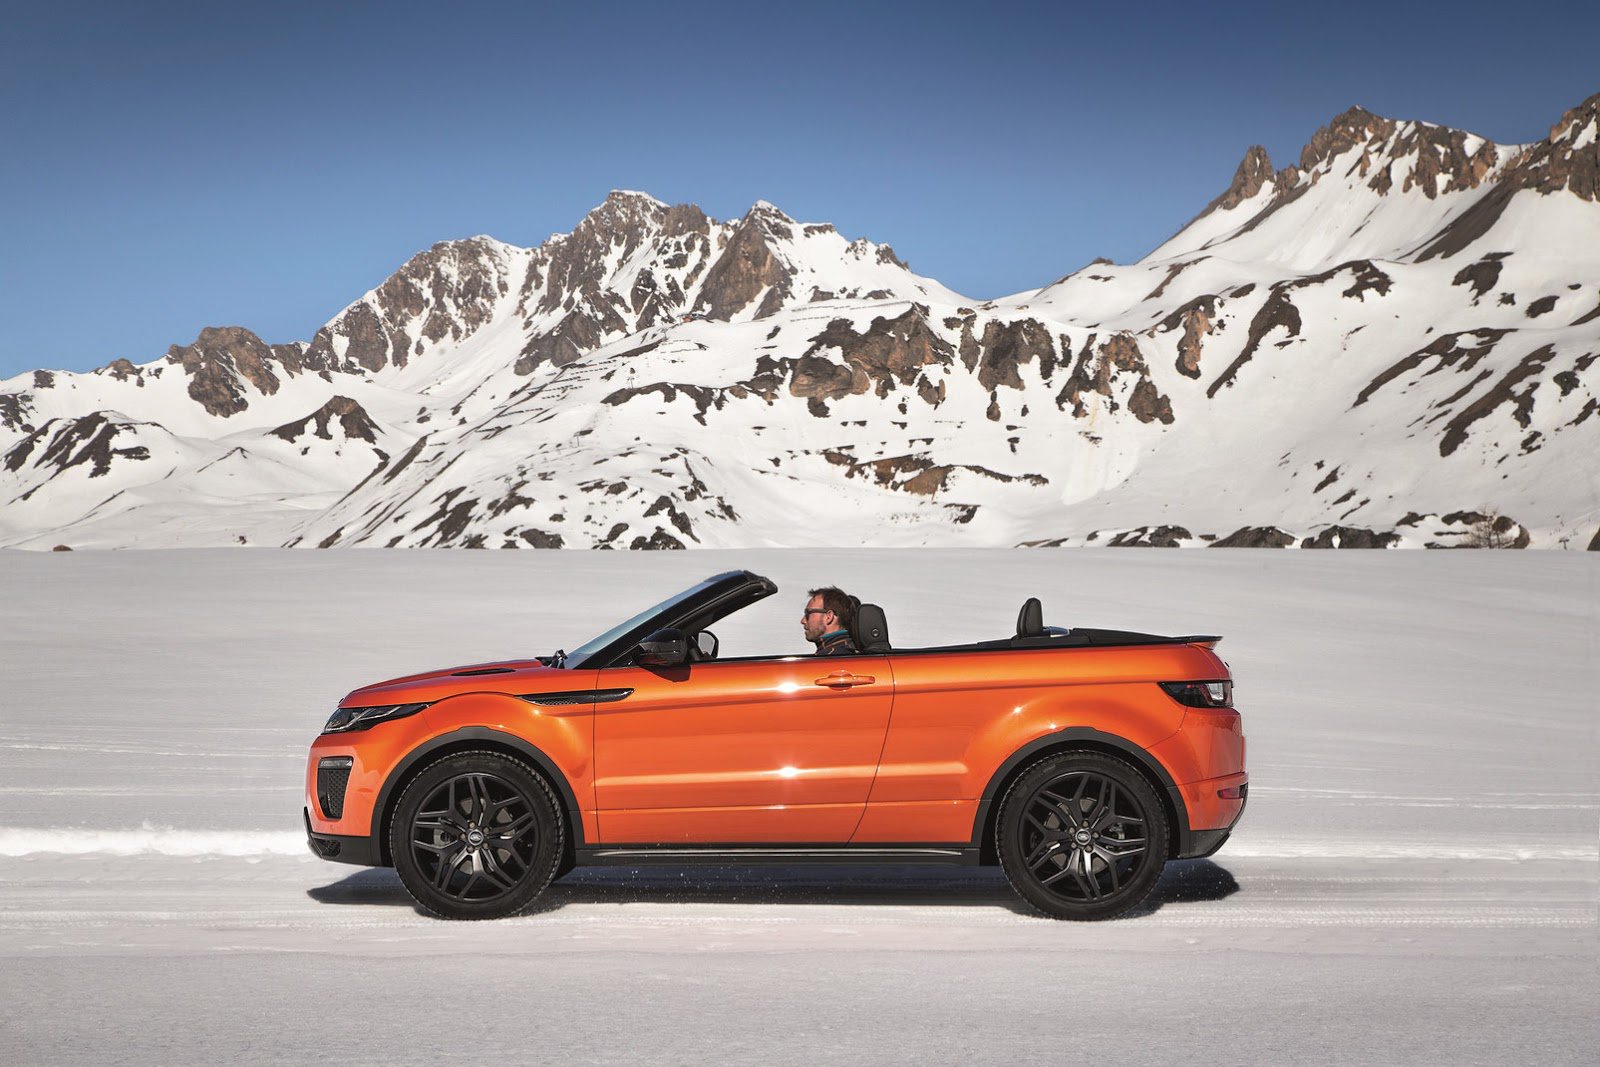 Видео-трейлер кабриолета Range Rover Evoque 